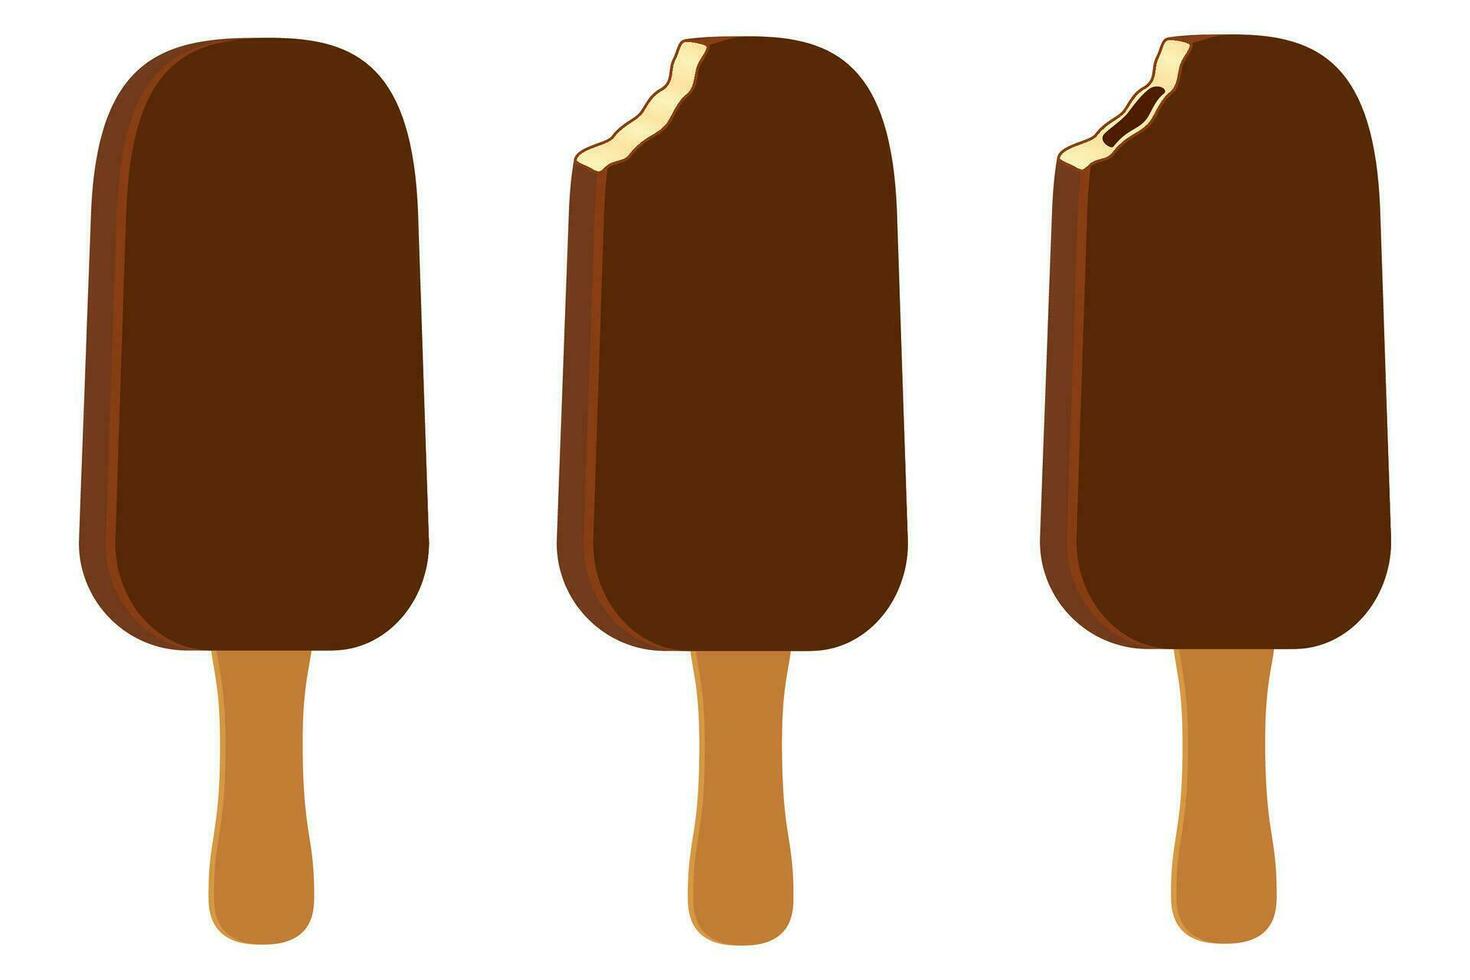 ijs in chocolade glazuur op stok voorraad vectorillustratie geïsoleerd op een witte achtergrond vector